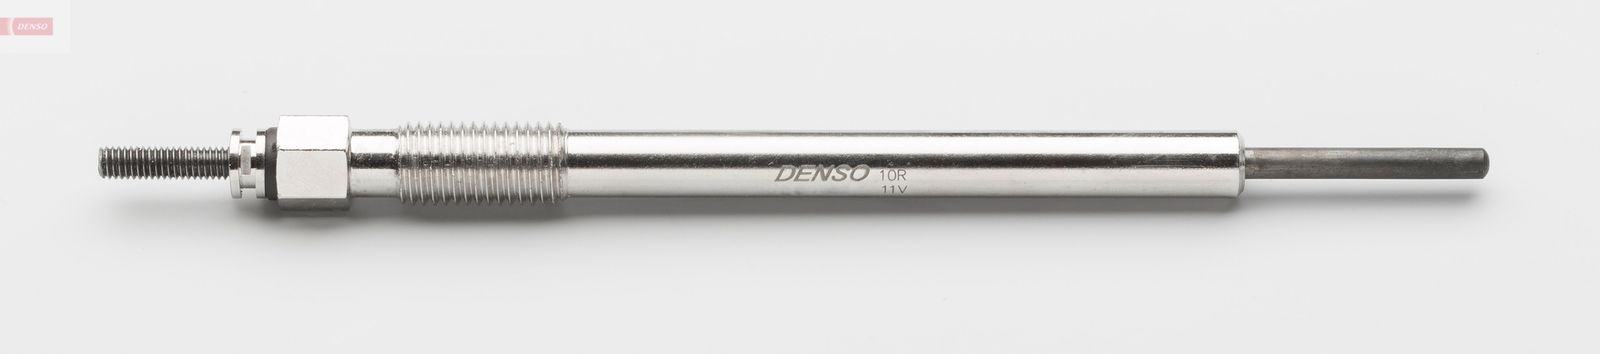 Žhavící svíčka DENSO DG-600